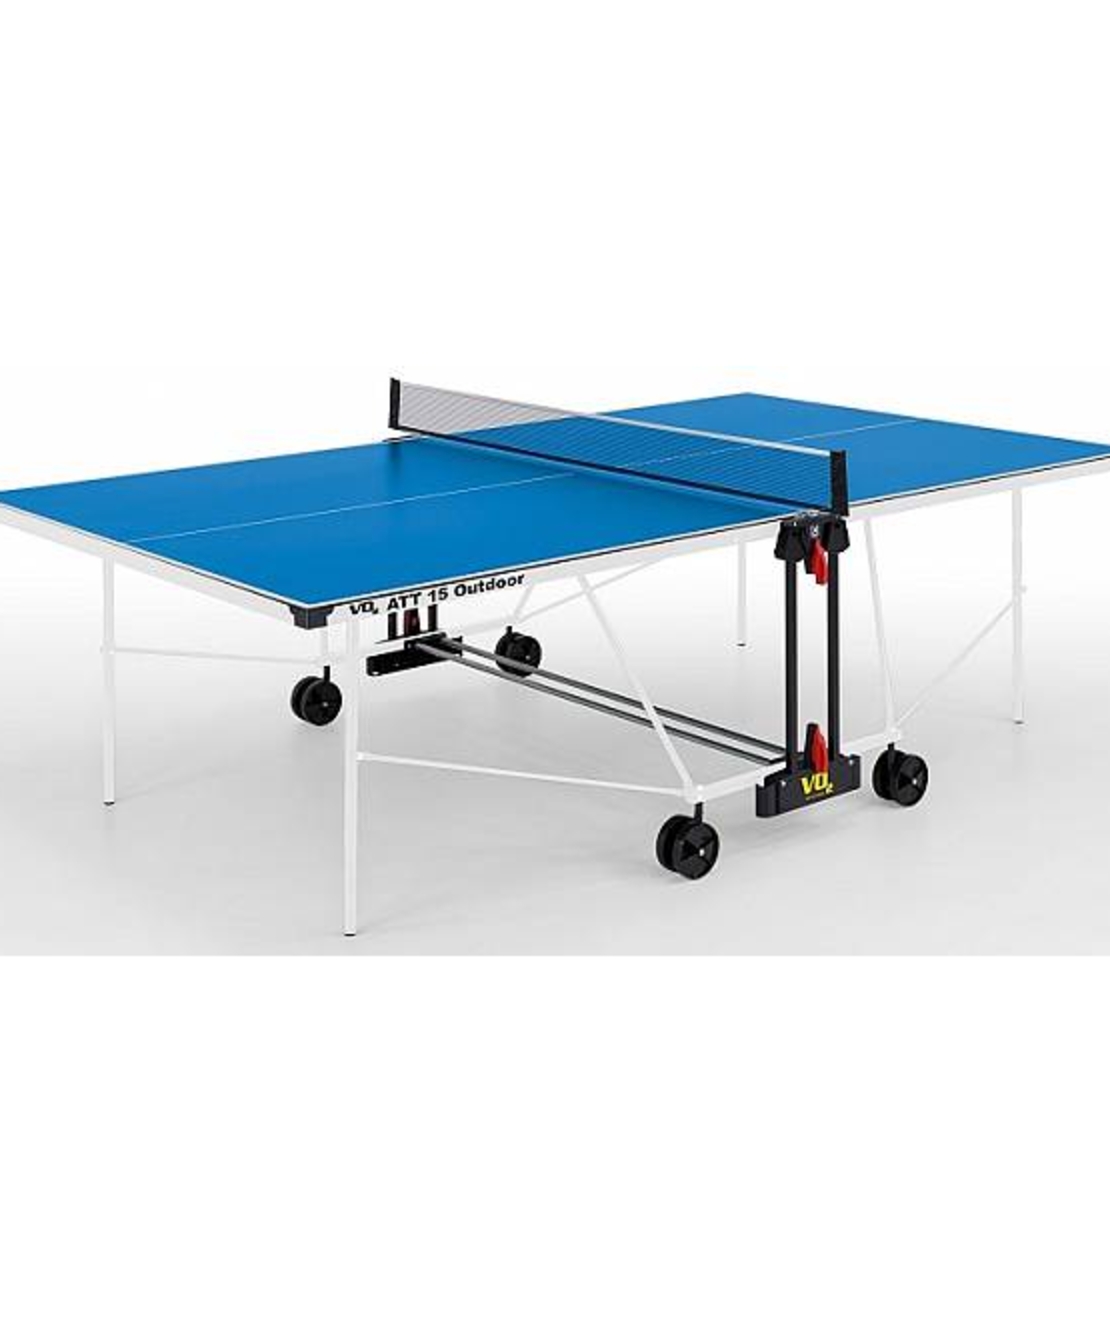 שולחן טניס חוץ מתקפל דגם ATT15 תוצרת גרמניה VO2